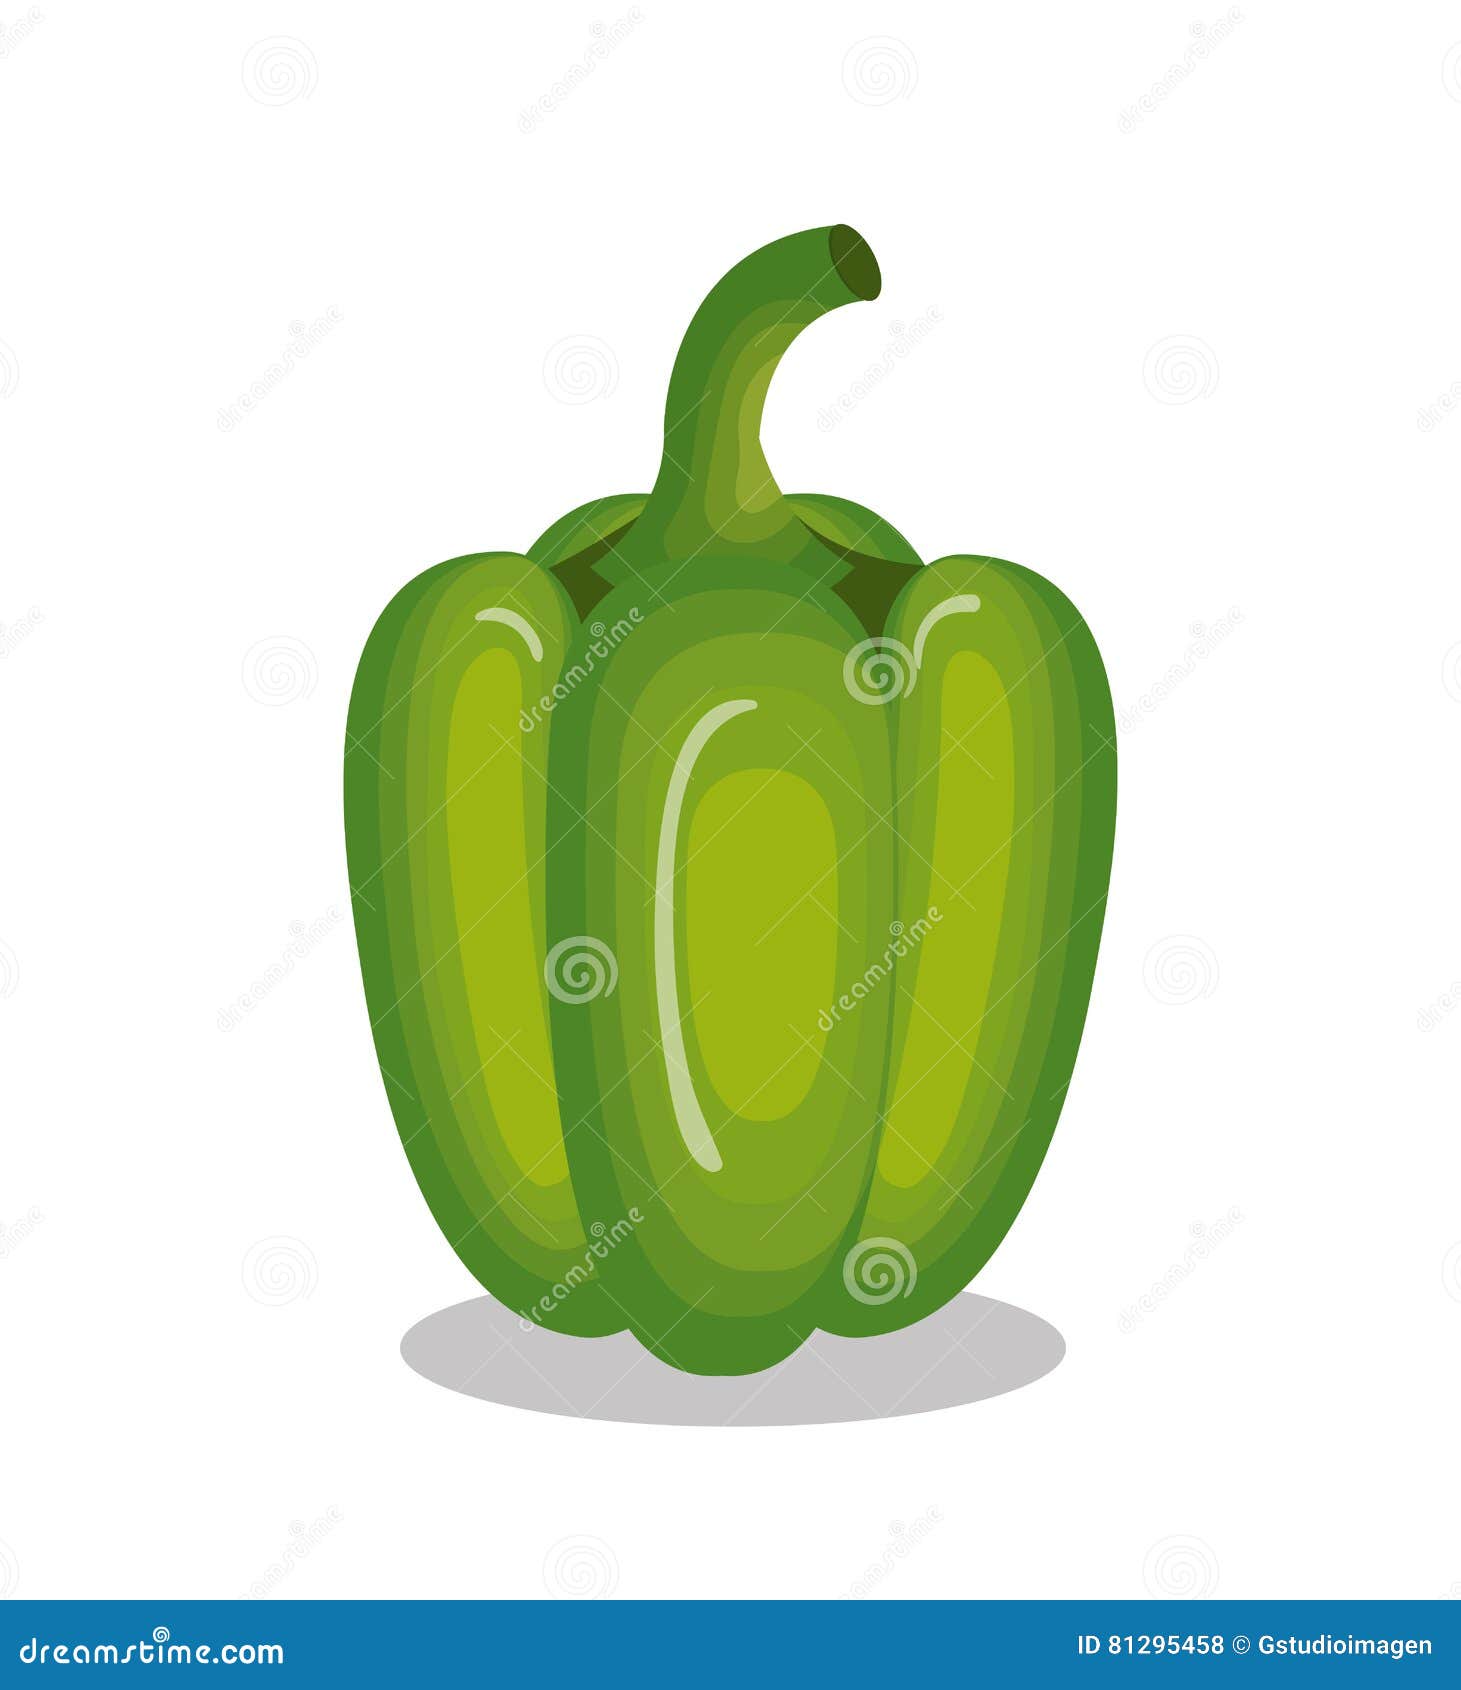 fresh cidra vegetable icon